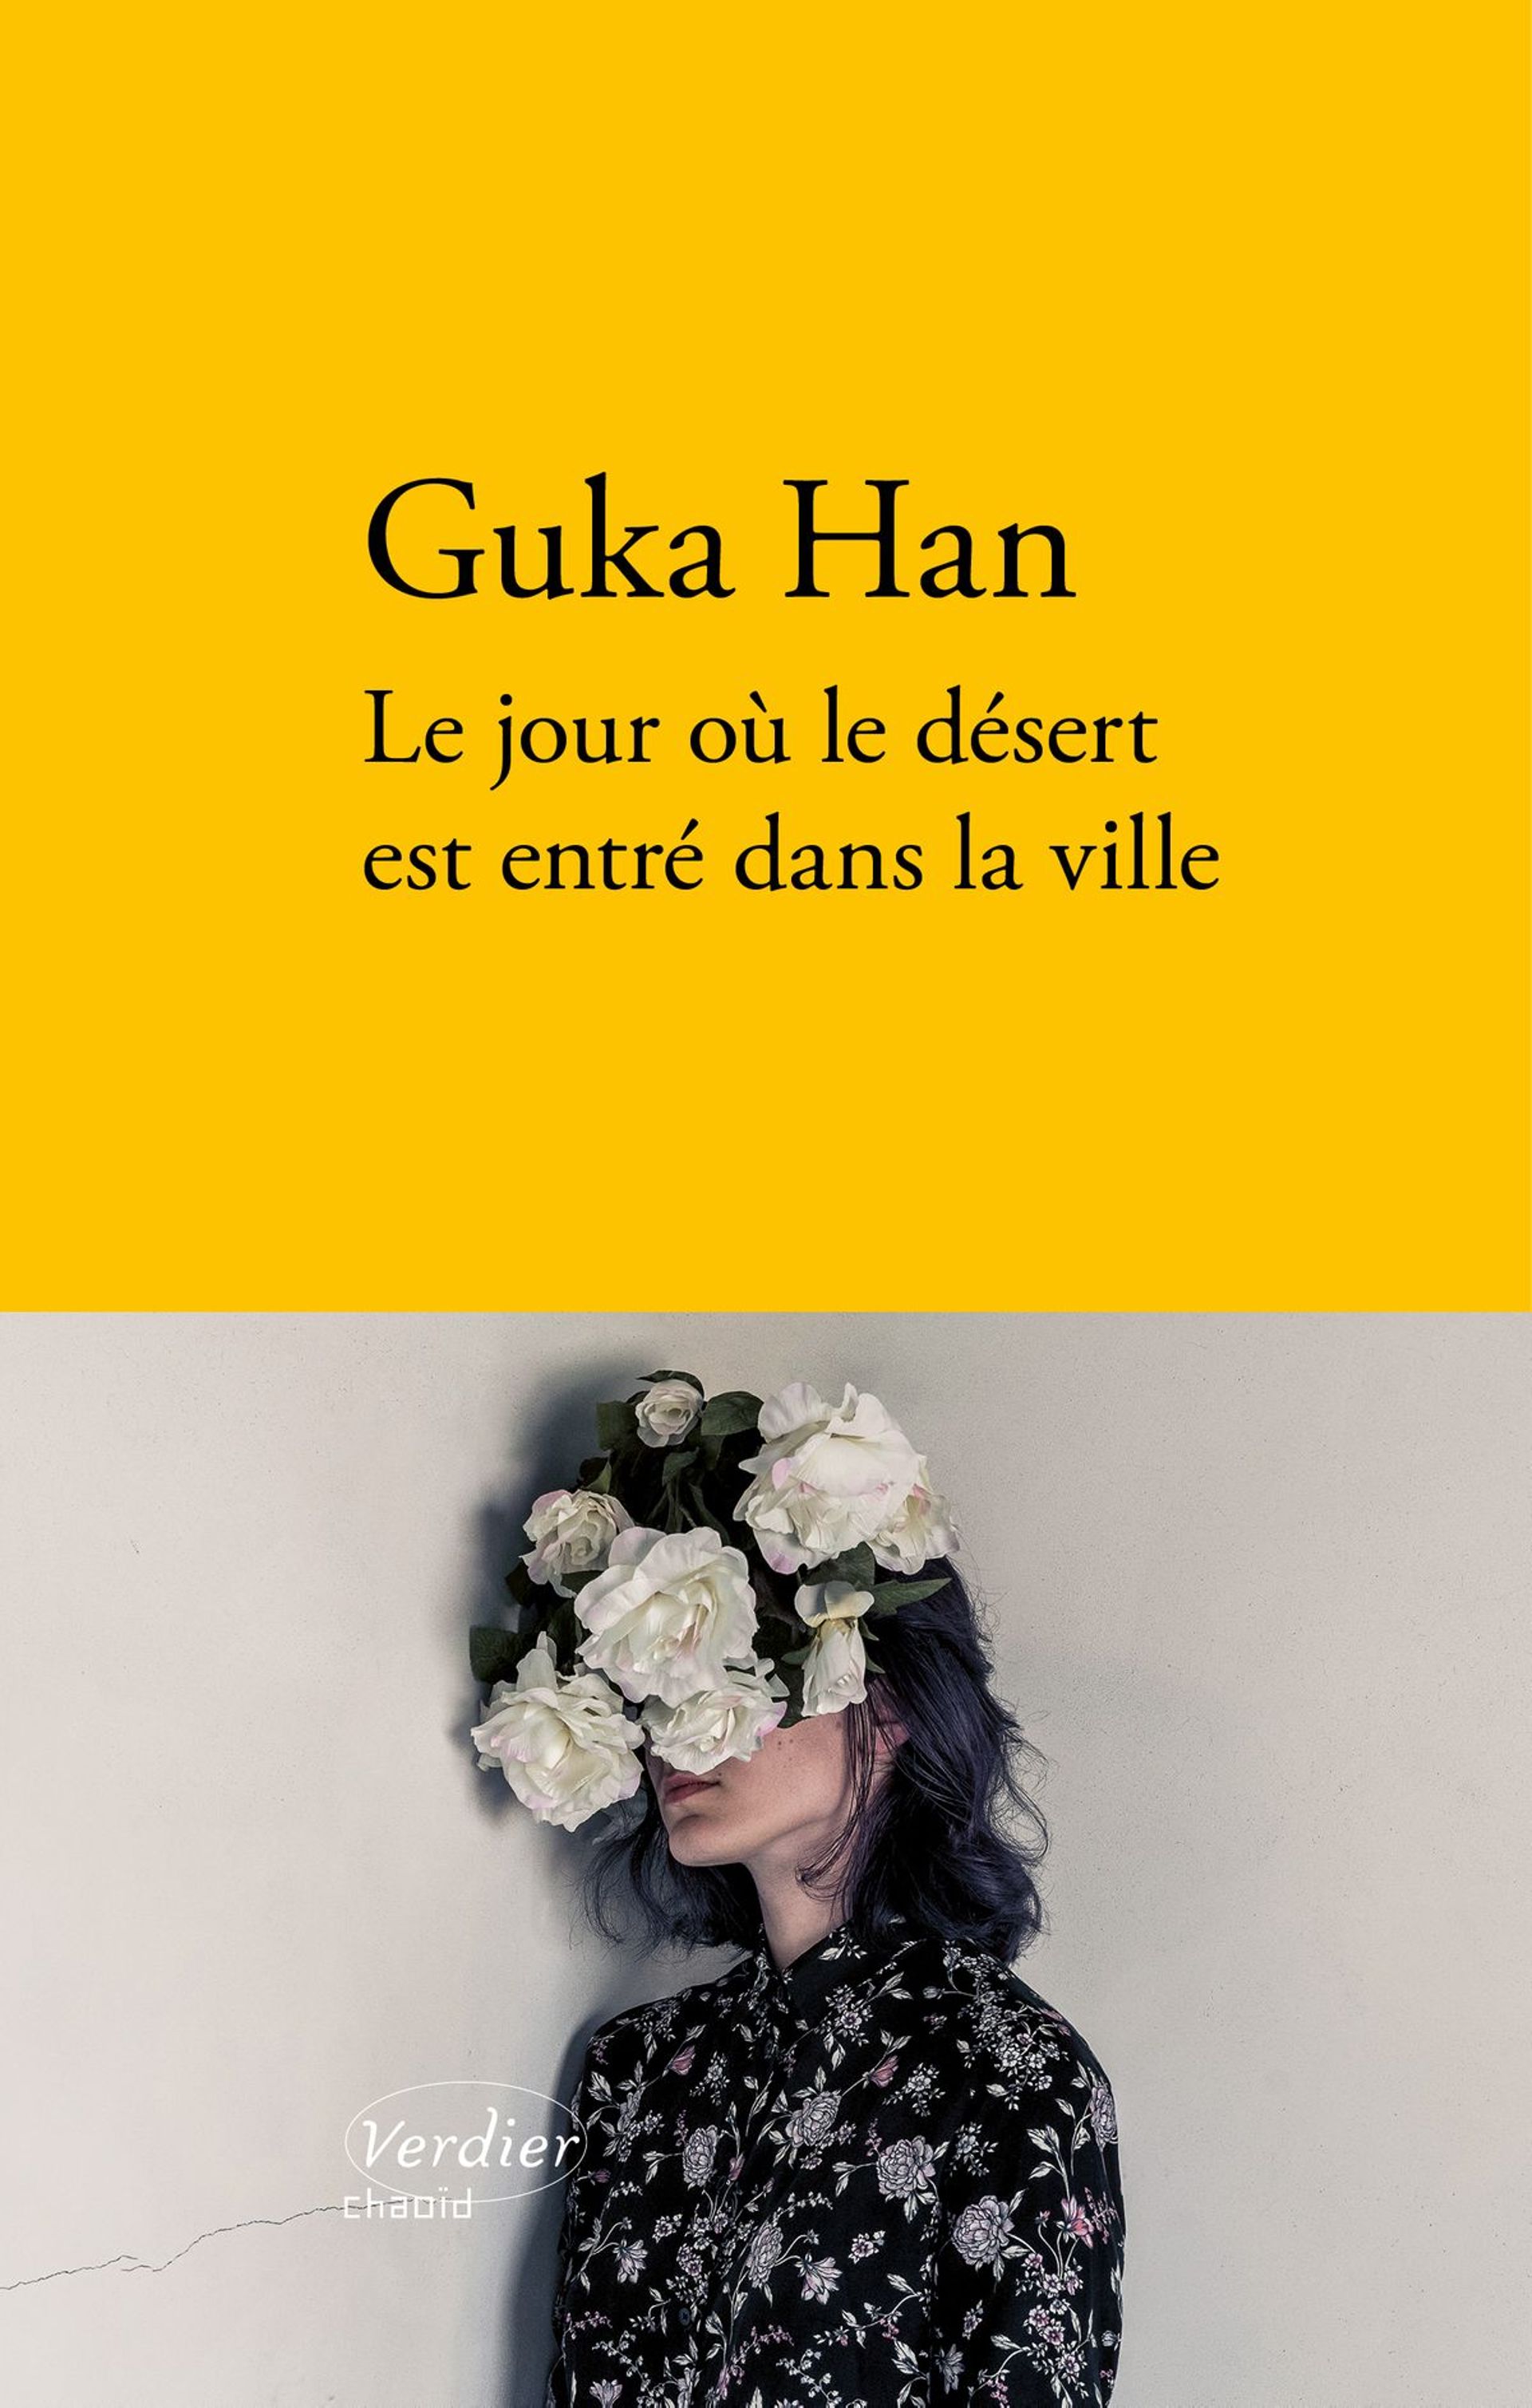 Couverture du livre "Le jour où le désert est entré dans la ville" de Guka Han (Verdier)